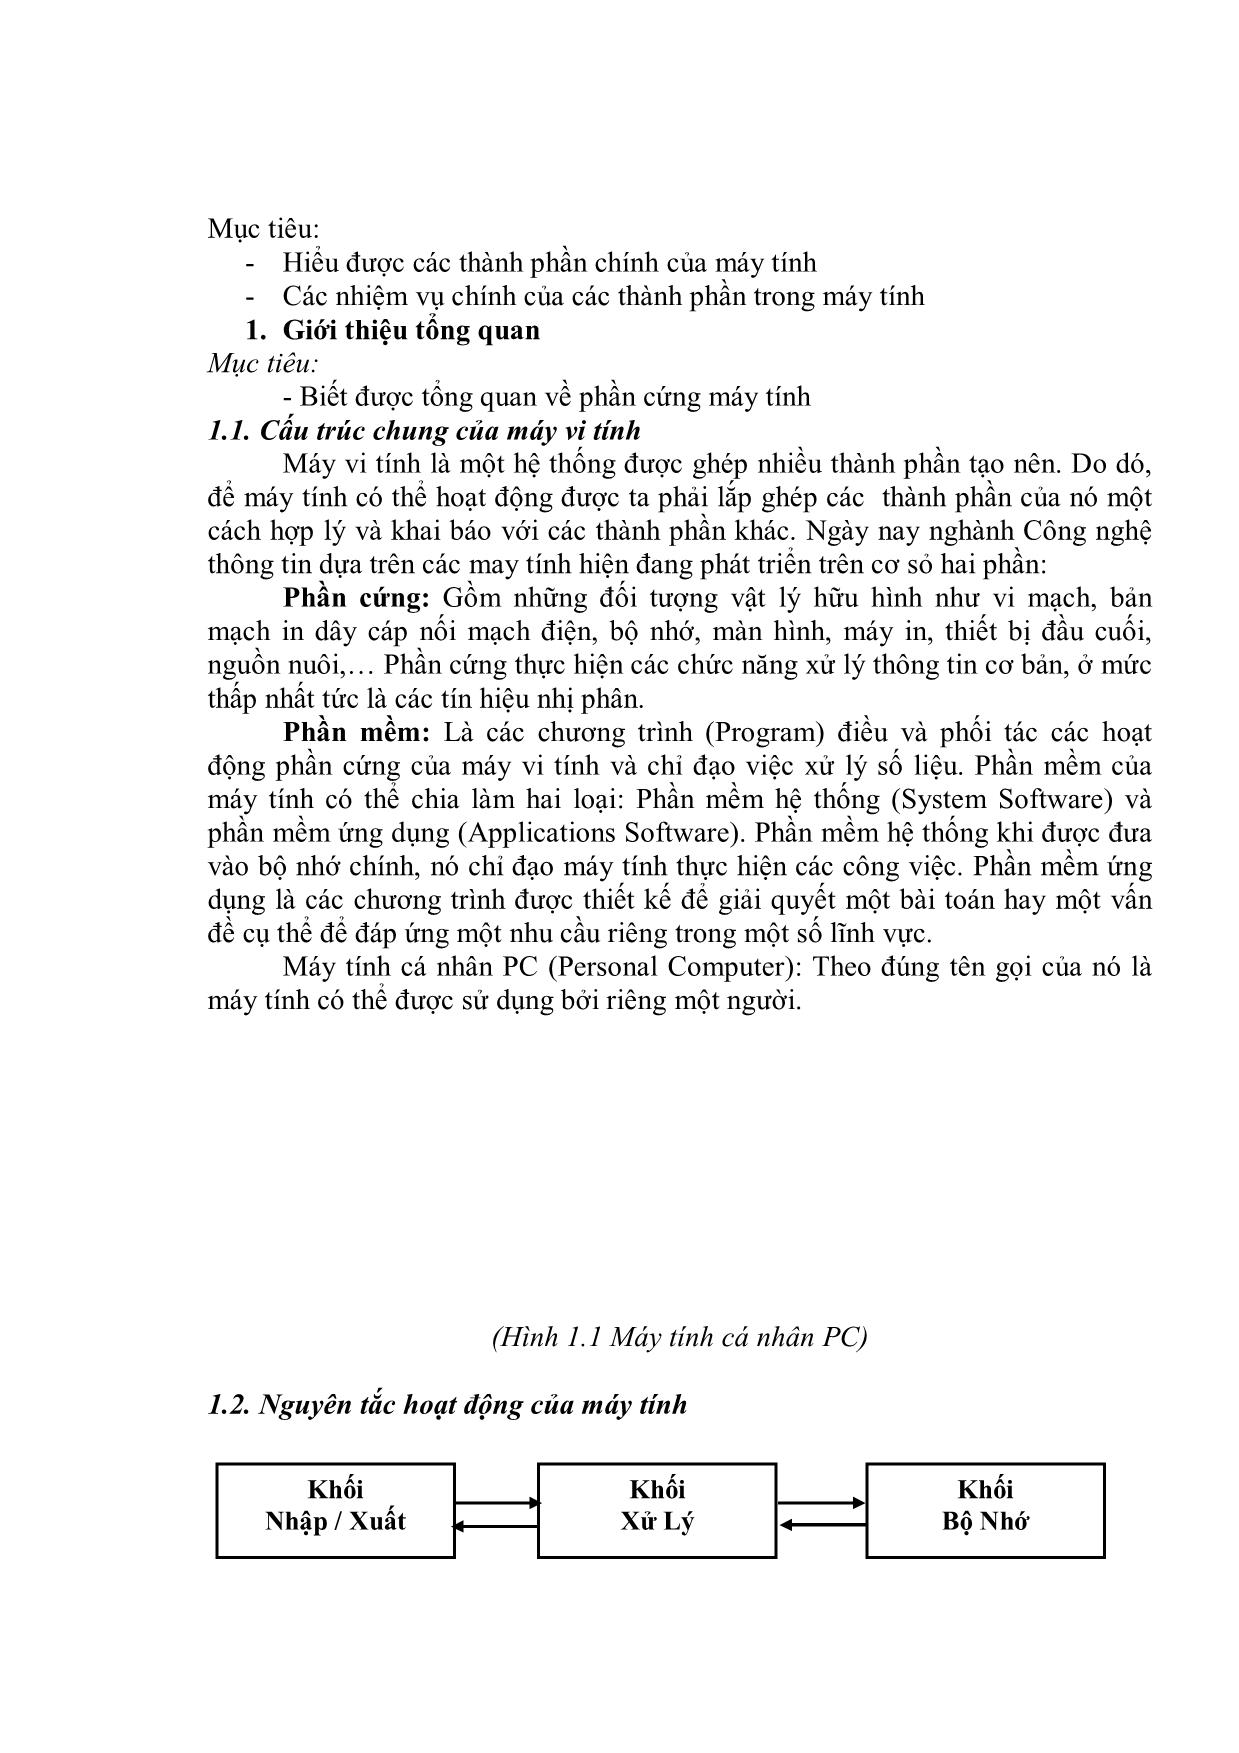 Giáo trình Lắp ráp và cài đặt máy tính - Bài mở đầu: Các thành phần cơ bản của máy tính trang 7